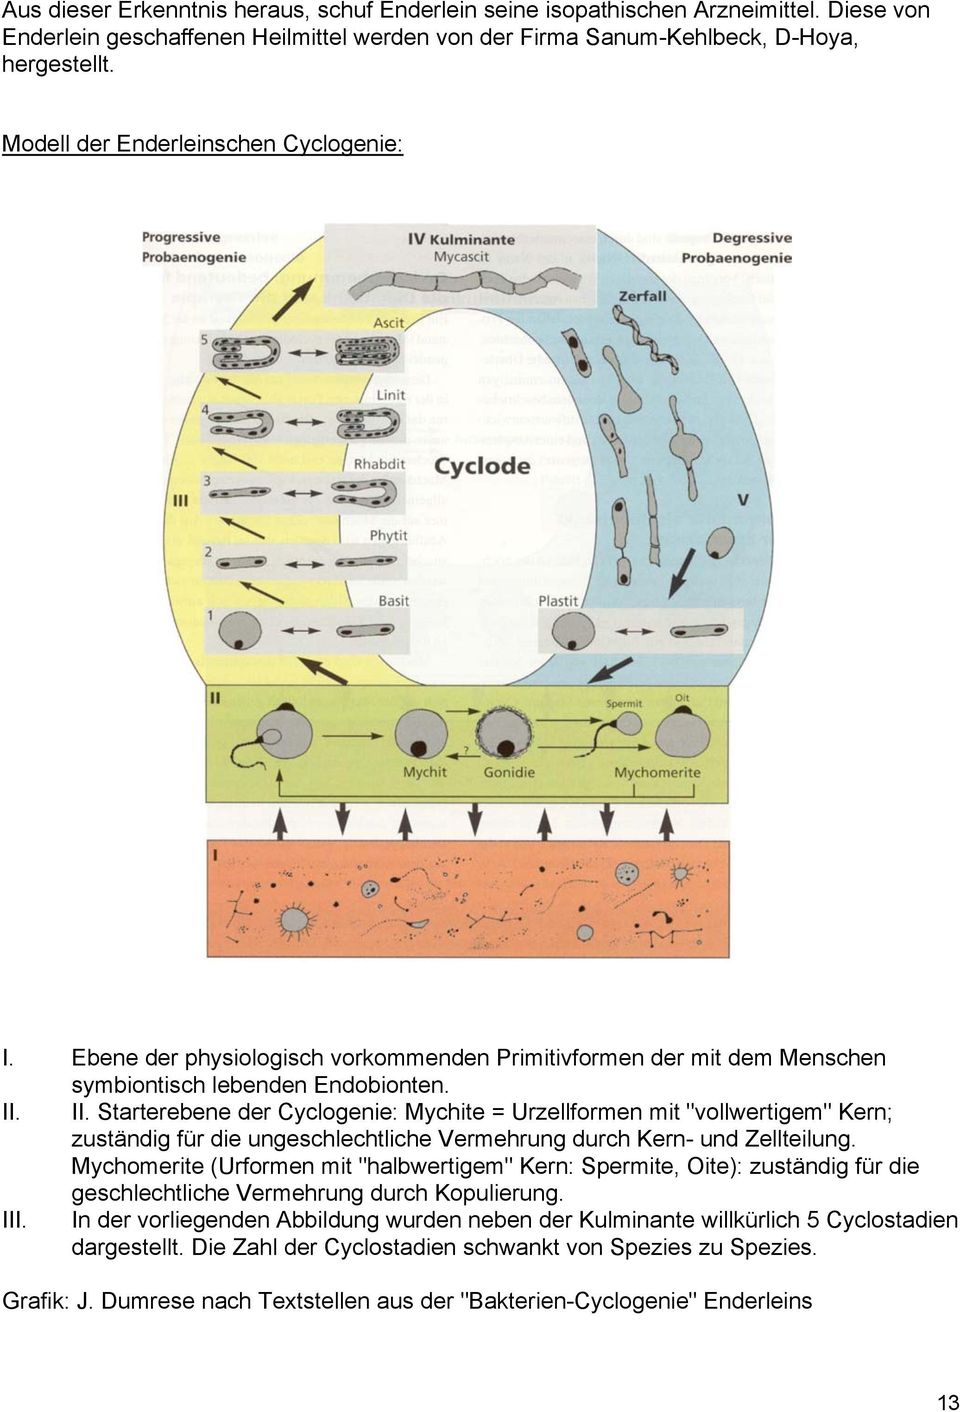 II. Starterebene der Cyclogenie: Mychite = Urzellformen mit "vollwertigem" Kern; zuständig für die ungeschlechtliche Vermehrung durch Kern- und Zellteilung.